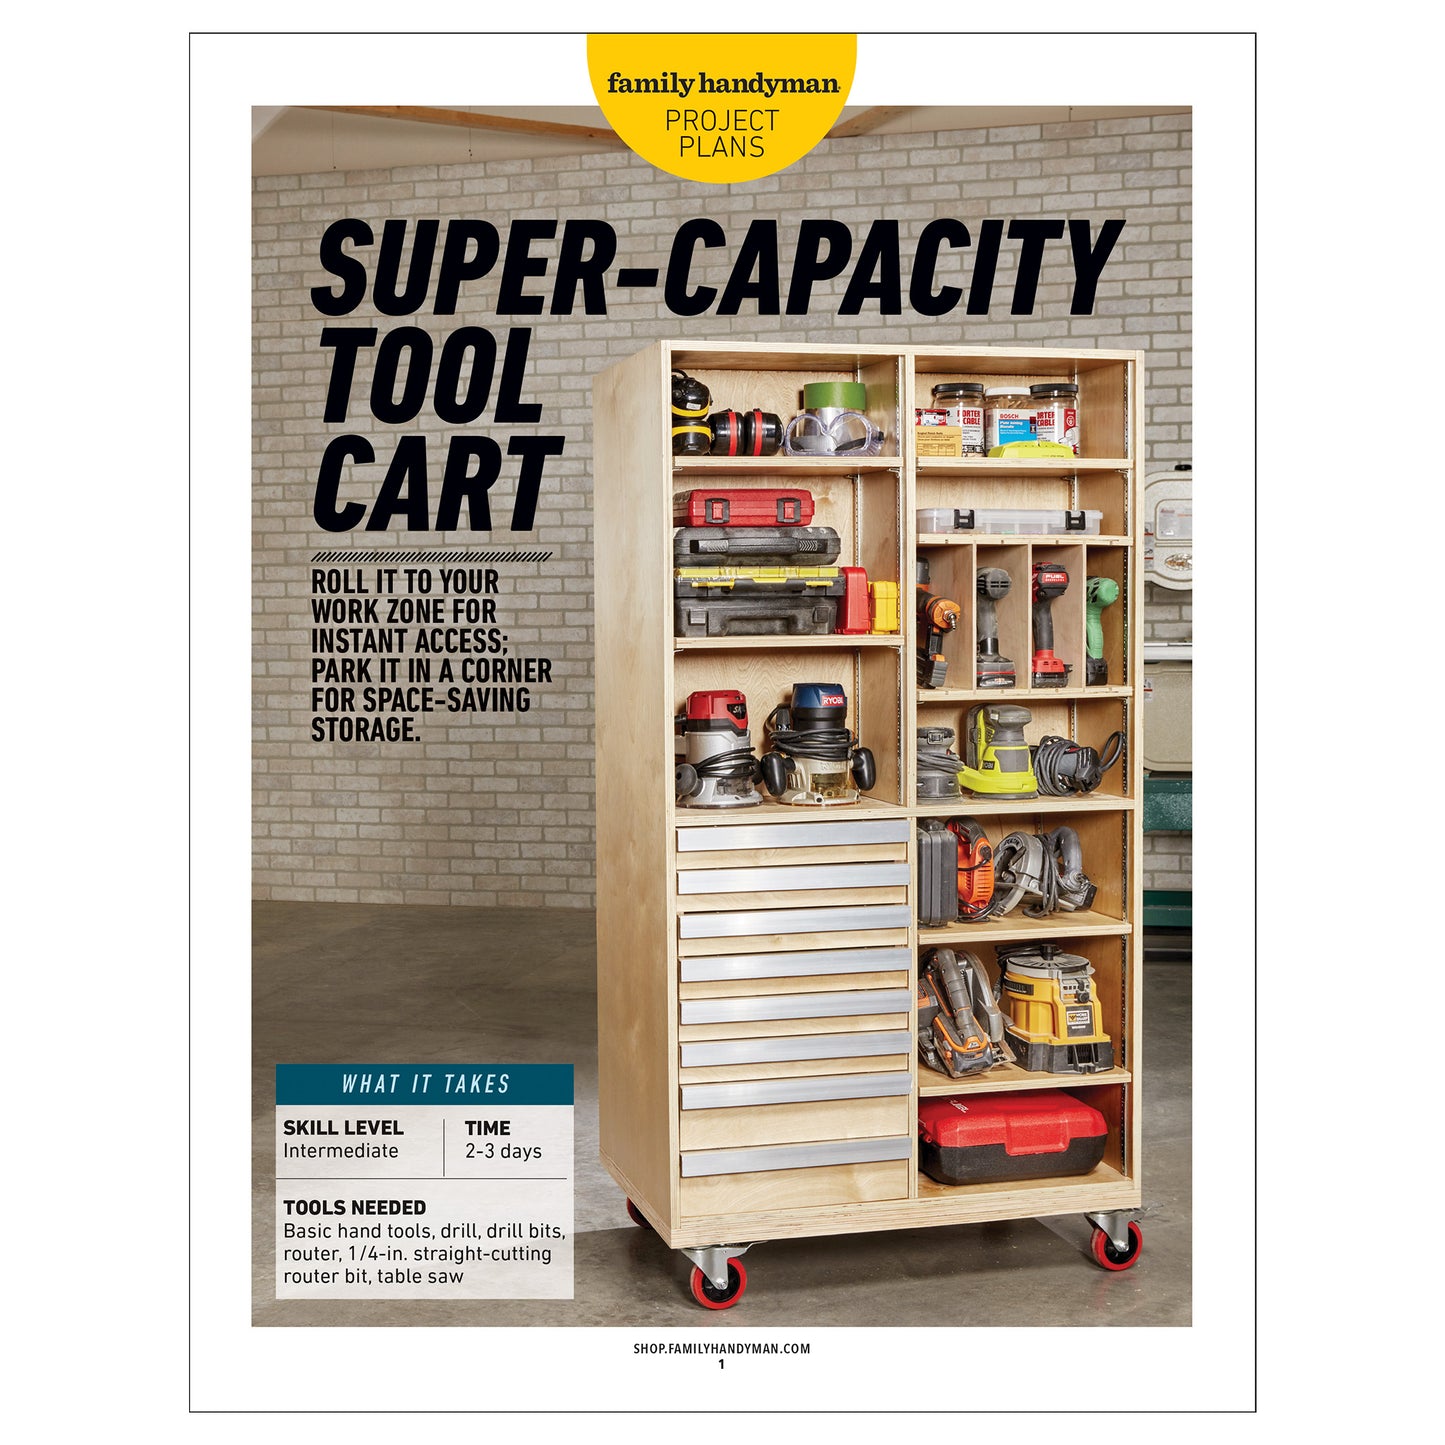 Super-Capacity Tool Cart